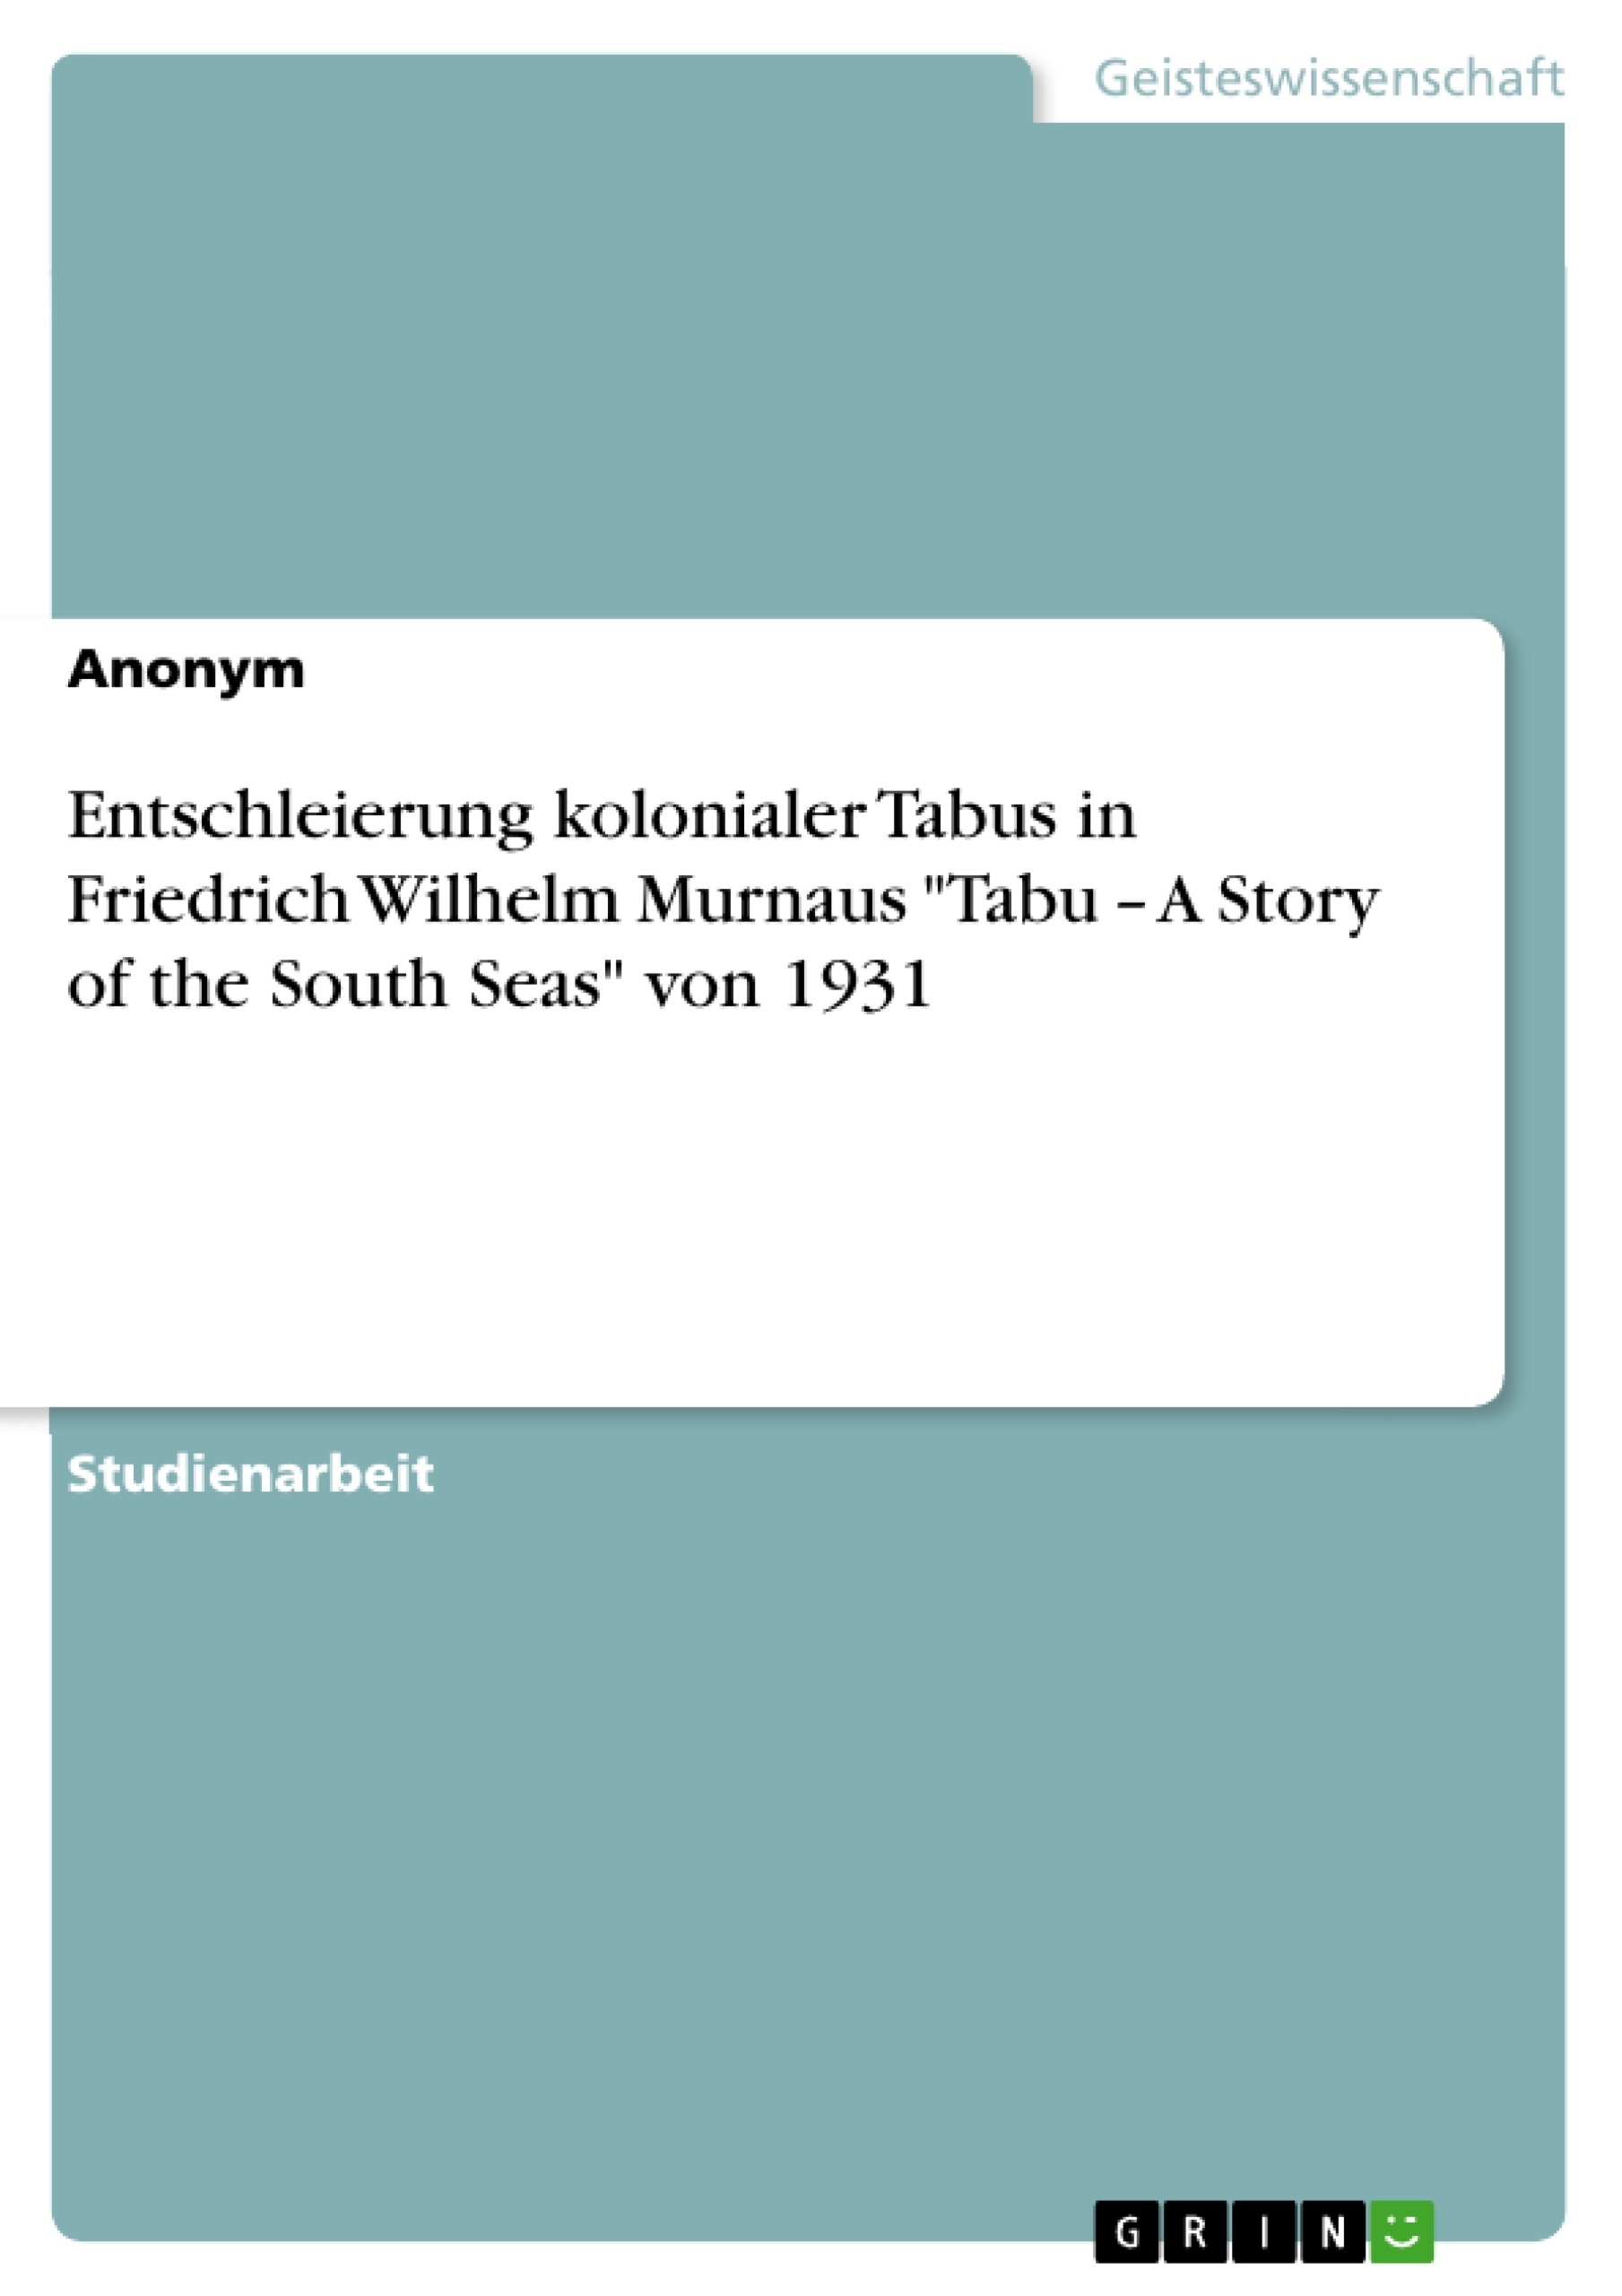 Titre: Entschleierung kolonialer Tabus in Friedrich Wilhelm Murnaus "Tabu – A Story of the South Seas" von 1931